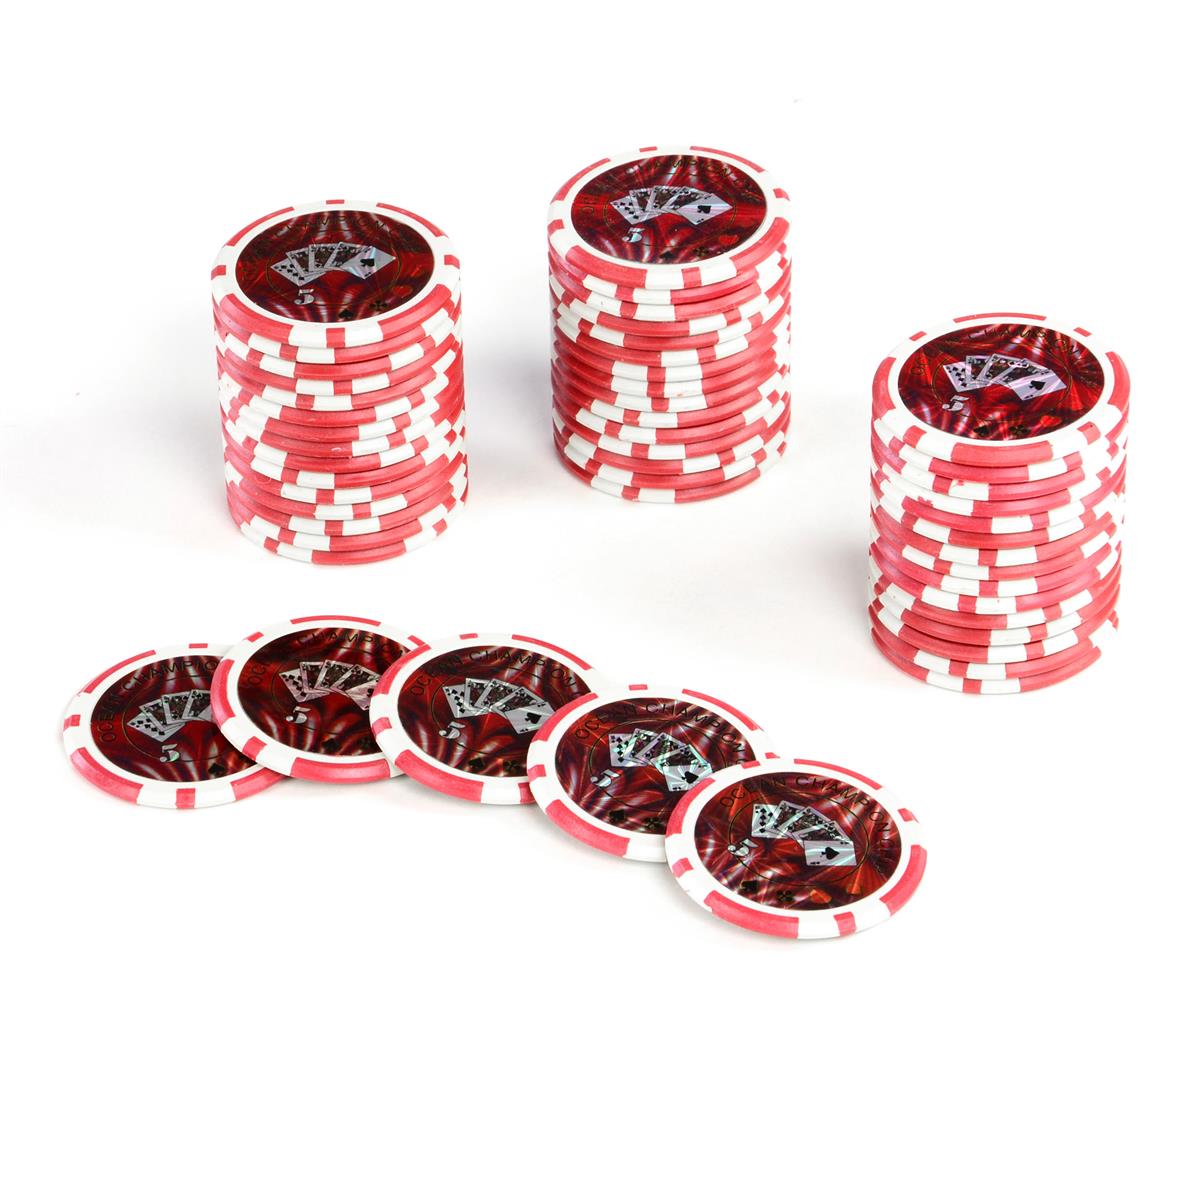 5 Farben Werte für Pokerkoffer 50 Profi Laser Poker Chips Pokerset Metallkern 